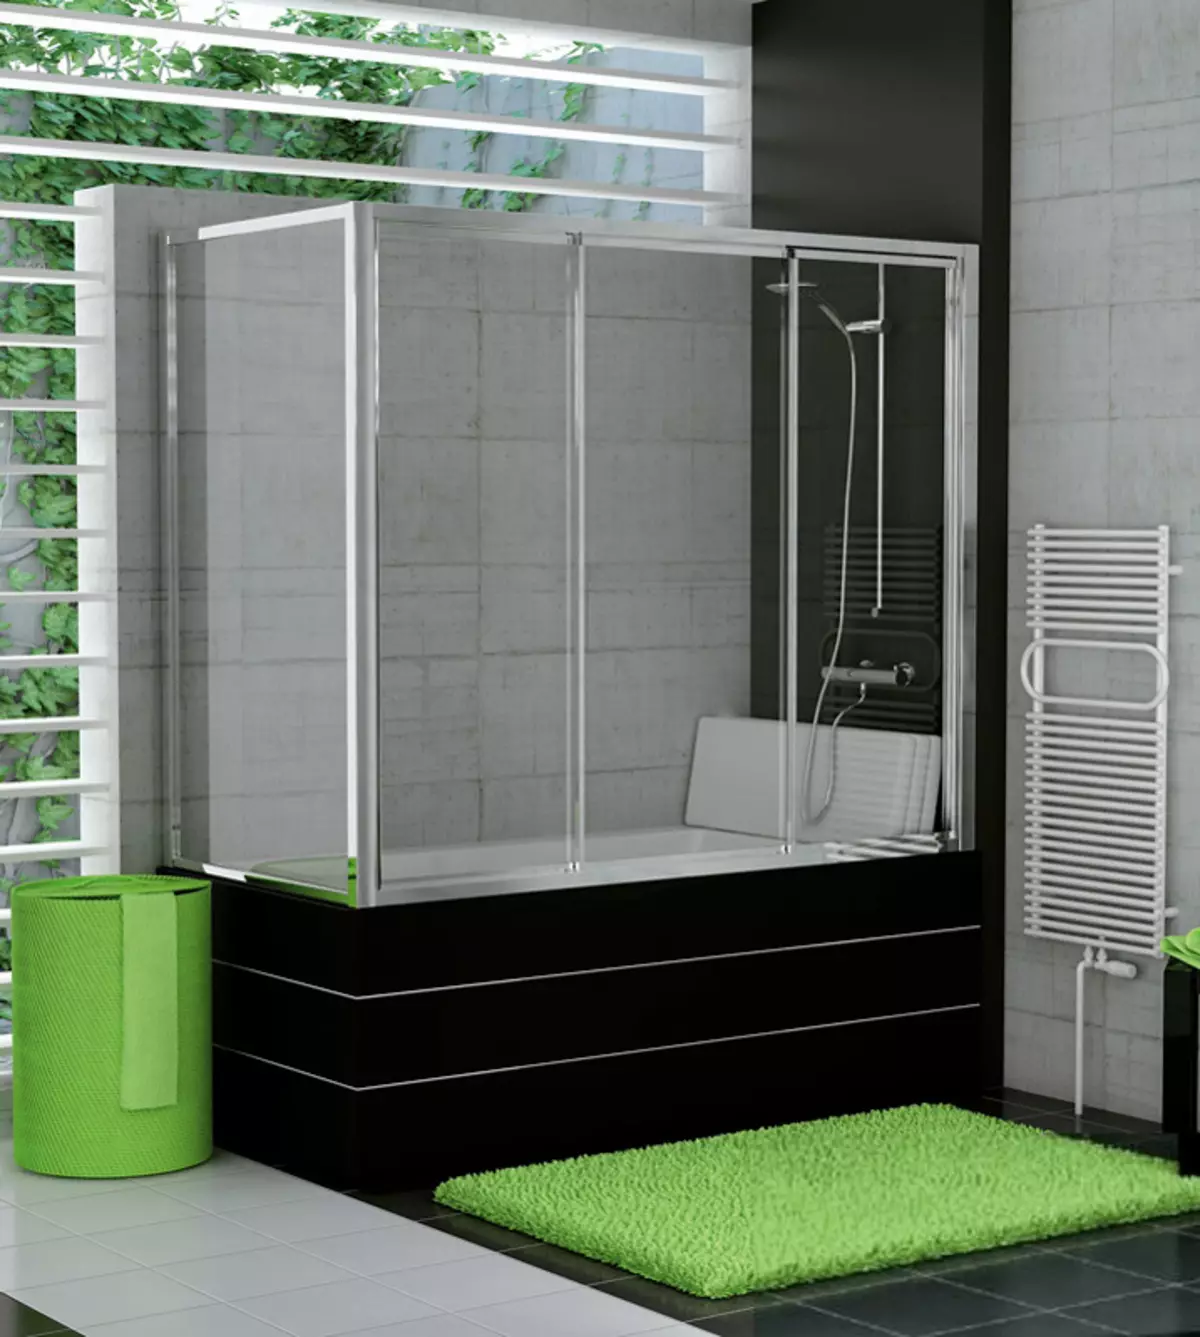 Шторки для ванны пластиковые раздвижные. Стеклянная шторка al-1670 700x1500мм. SANSWISS шторка на ванну. Ограждение для ванны. Стеклянные шторки для ванной раздвижные.